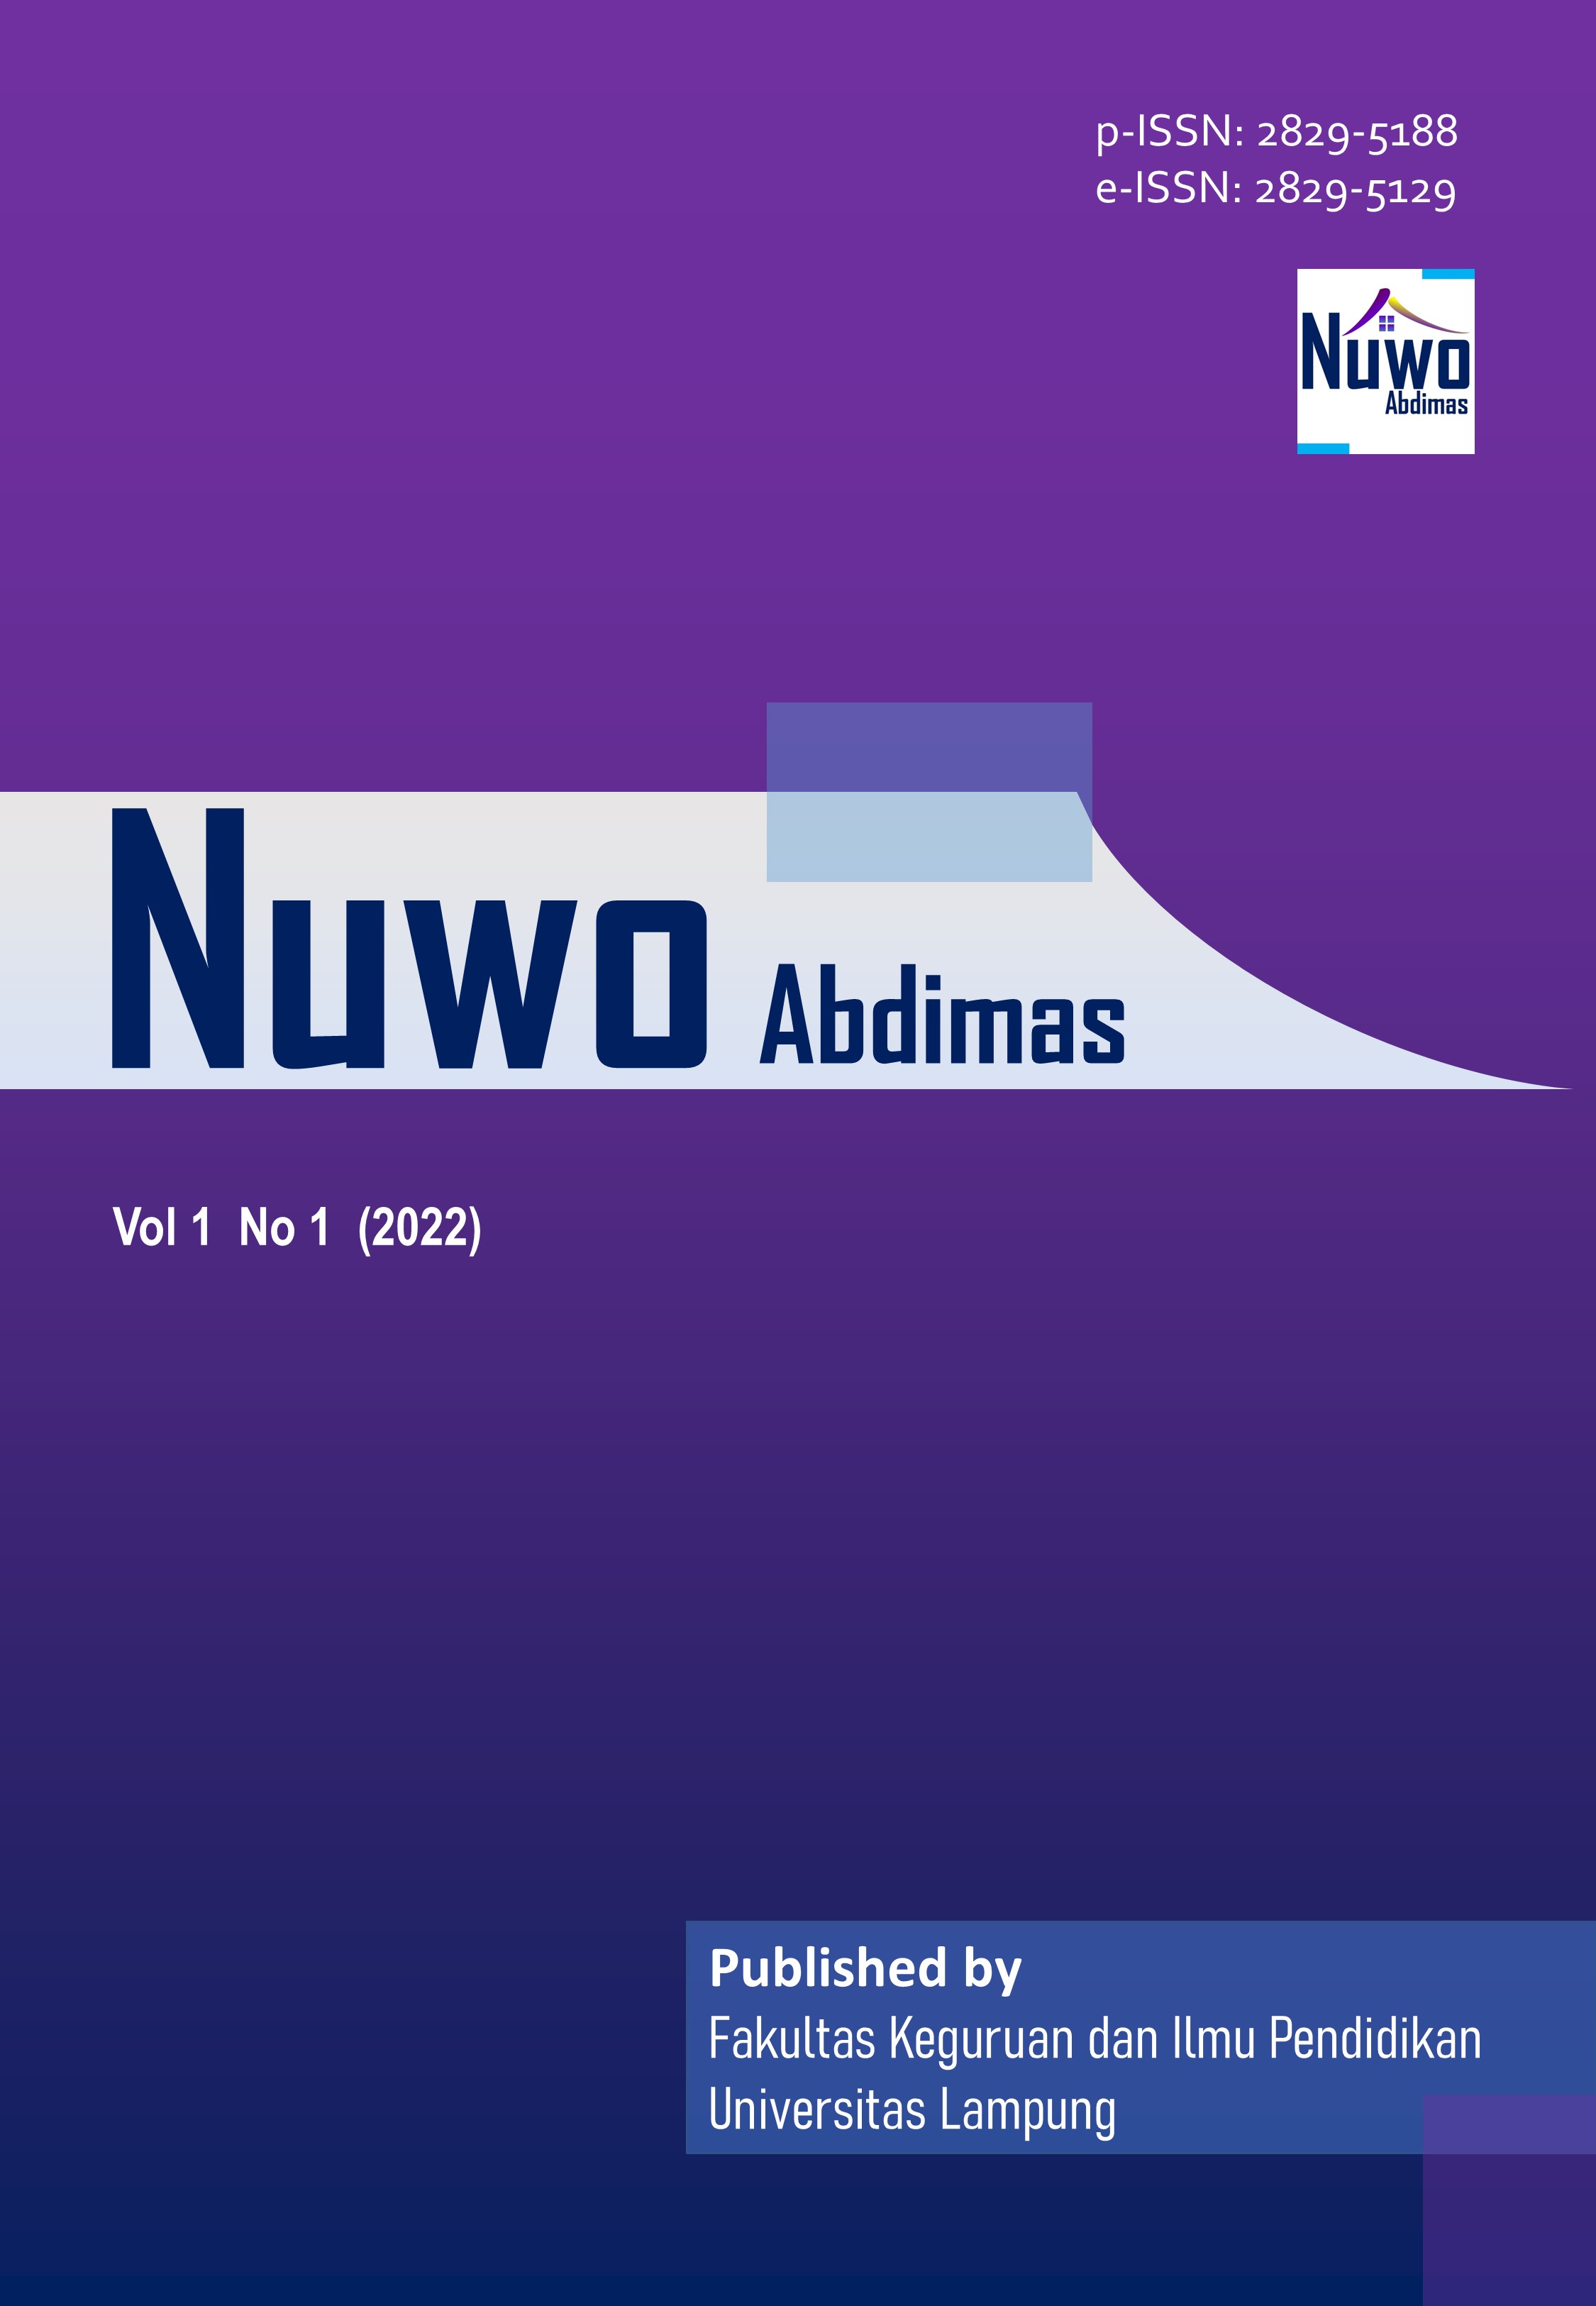 					View Vol. 1 No. 1 (2022): Nuwo Abdimas
				